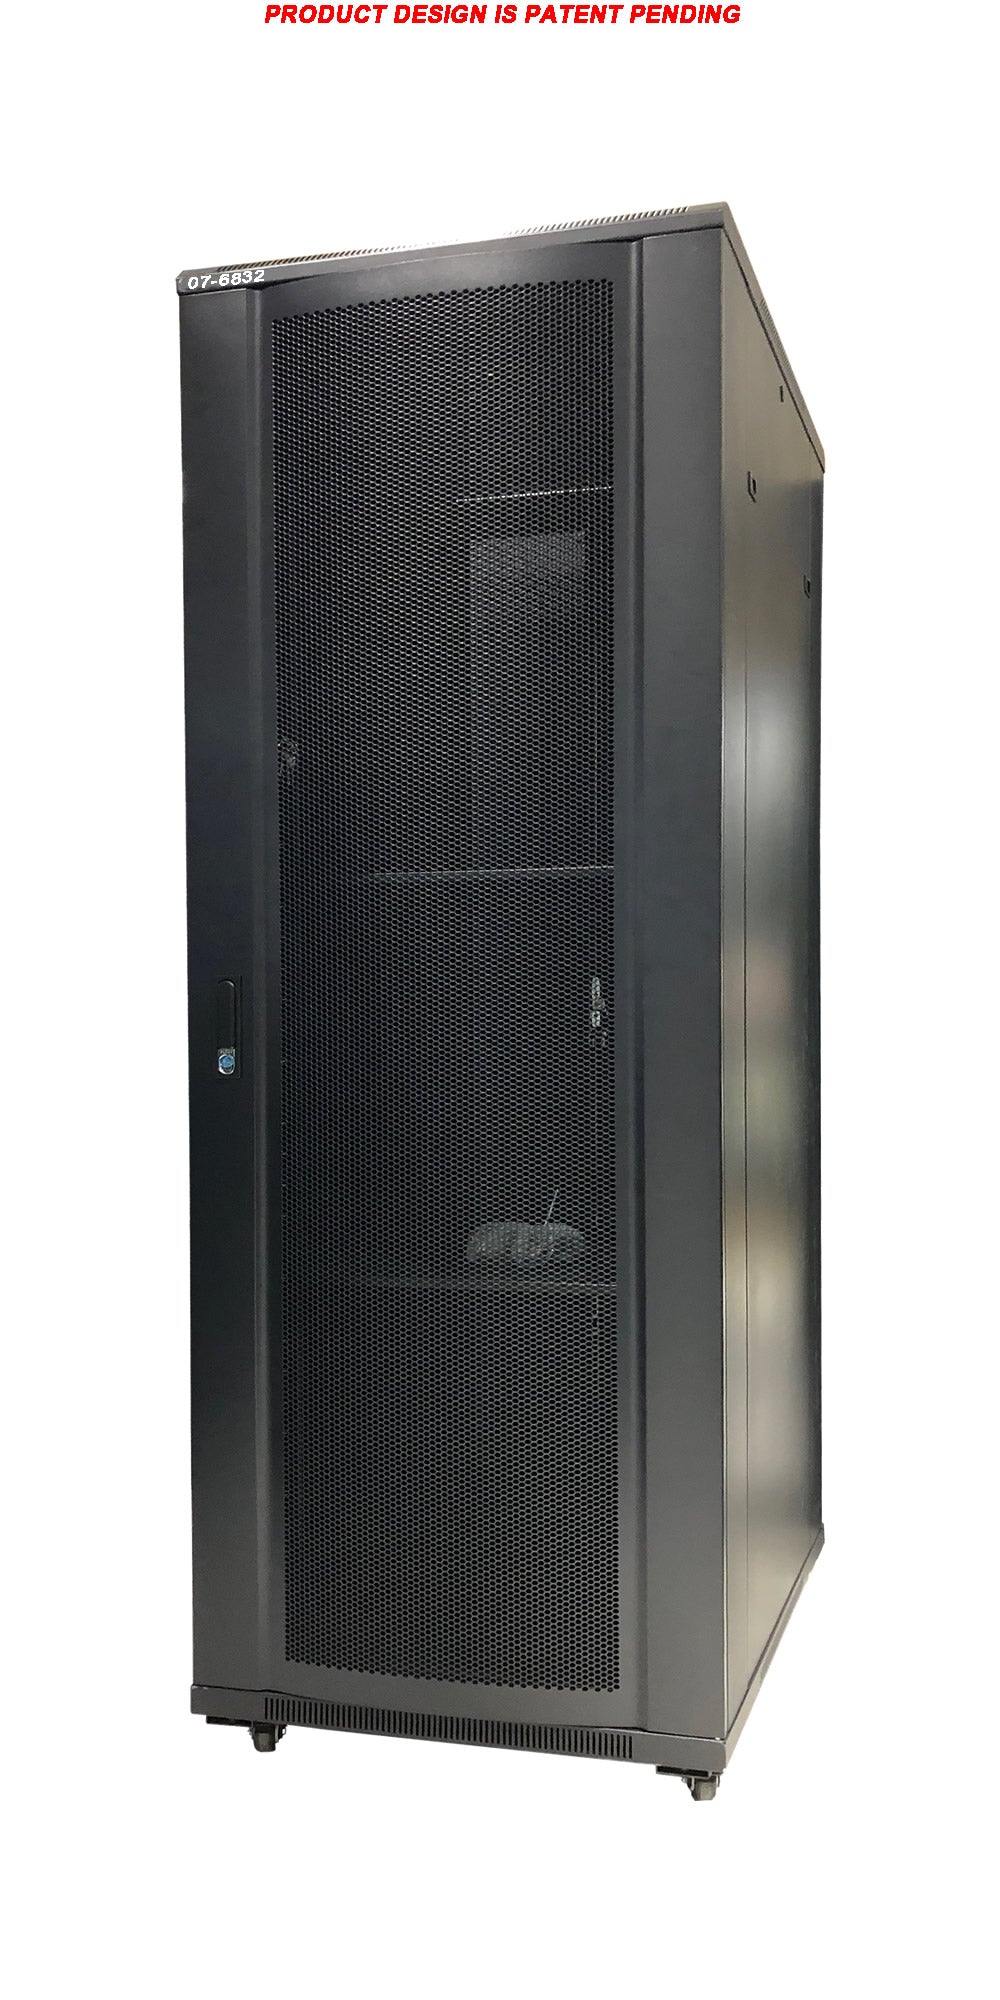 07-6832 32U Floor Standing Server Cabinet - 80cm Extra Deep, Metal Door, Heavy Duty Caster, Fan & Shelf